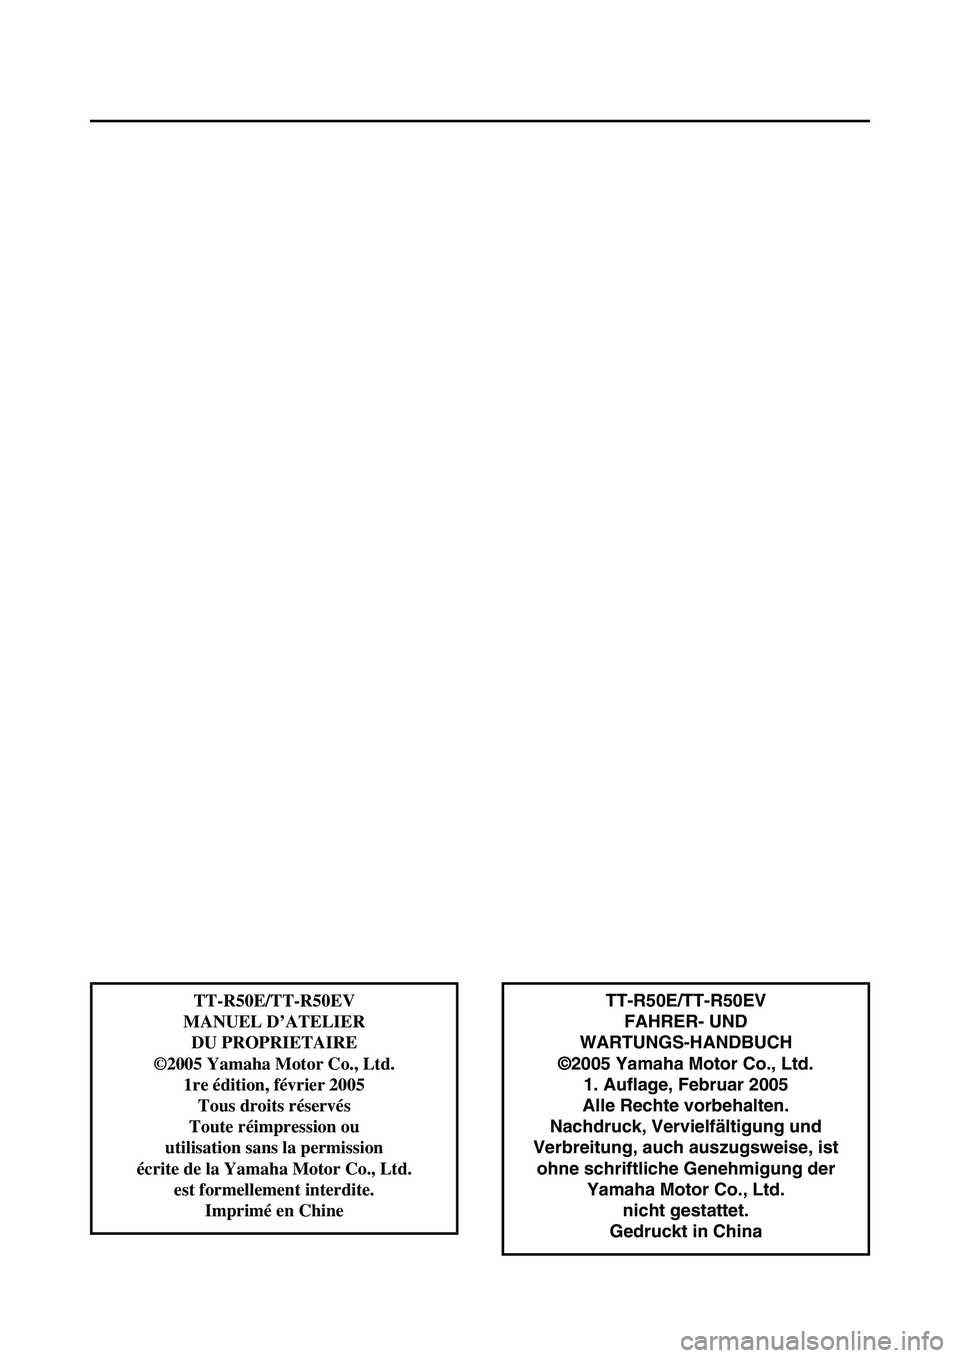 YAMAHA TTR50 2006  Betriebsanleitungen (in German) 
TT-R50E/TT-R50EVFAHRER- UND 
WARTUNGS-HANDBUCH
©2005 Yamaha Motor Co., Ltd. 1. Auflage, Februar 2005
Alle Rechte vorbehalten.
Nachdruck, Vervielfältigung und
Verbreitung, auch auszugsweise, ist  oh